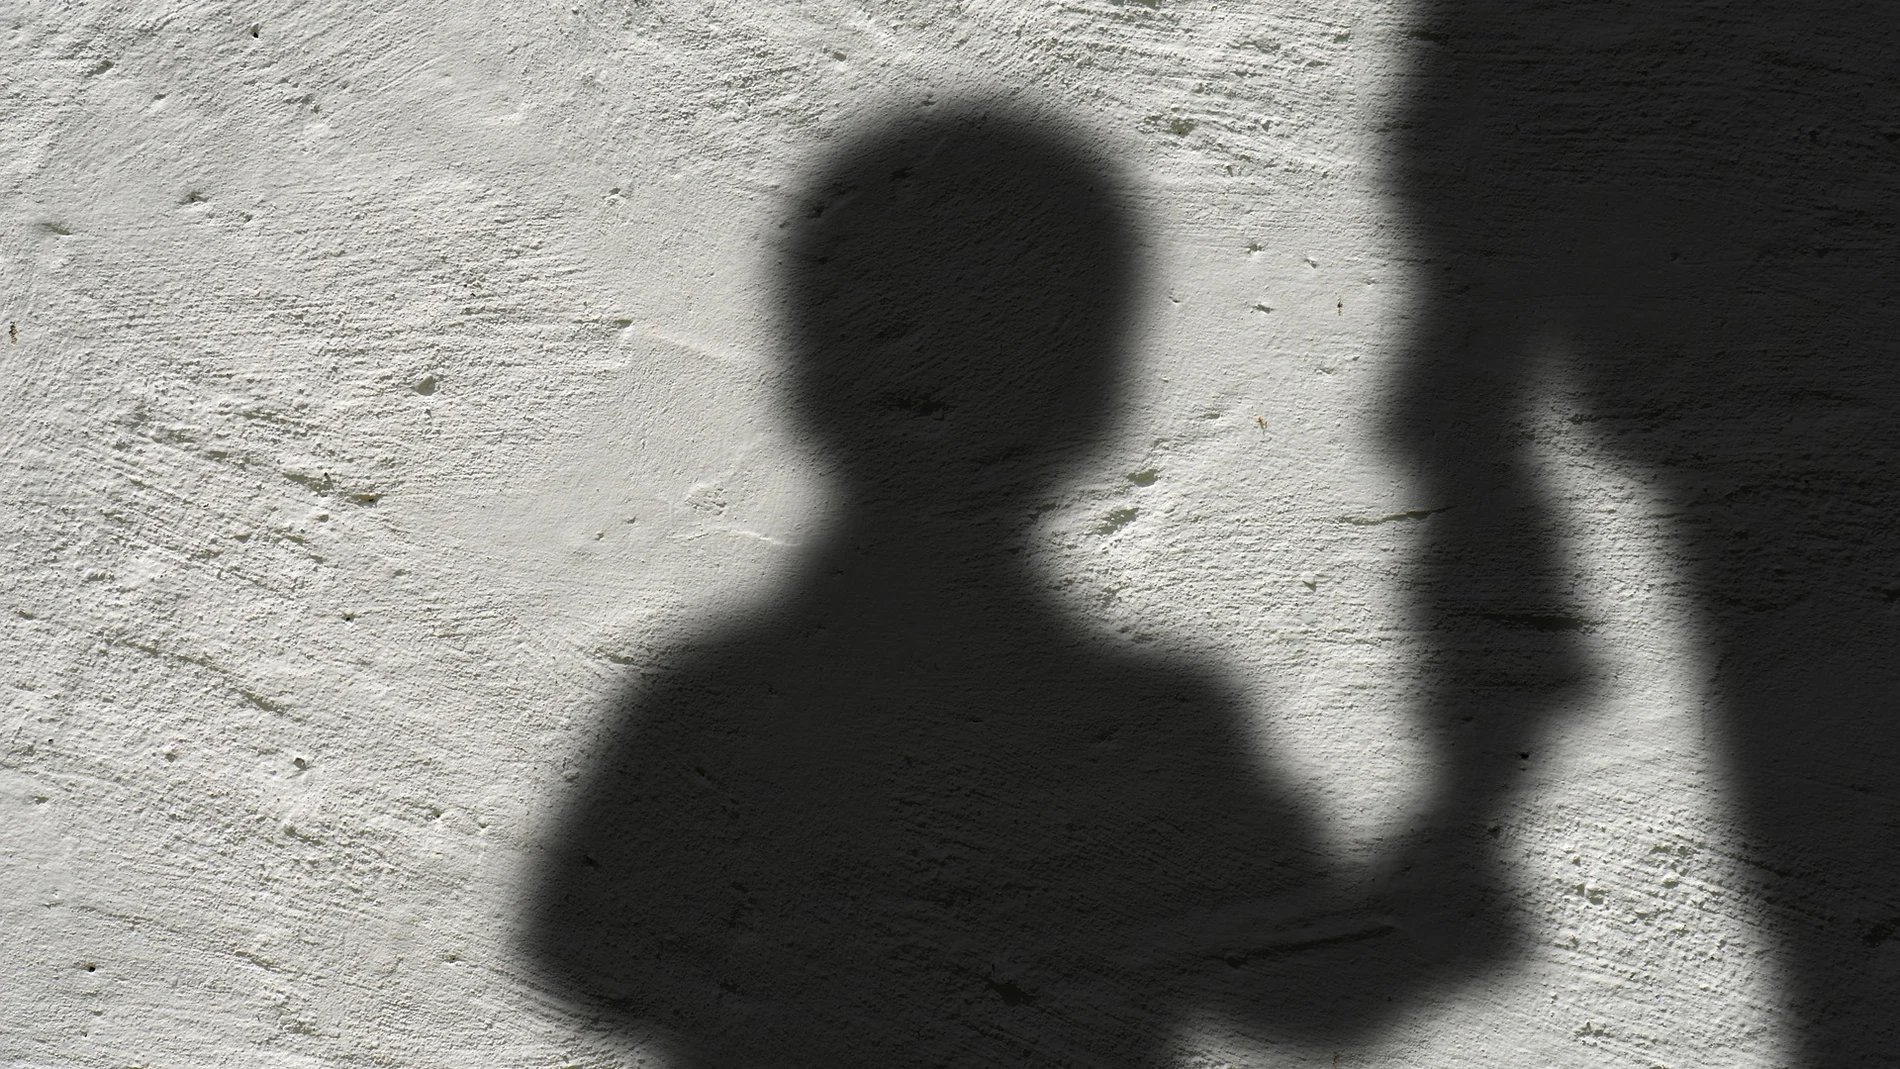 Condenan a cadena perpetua a una mujer que torturó y asesinó a su hijastro de 6 años